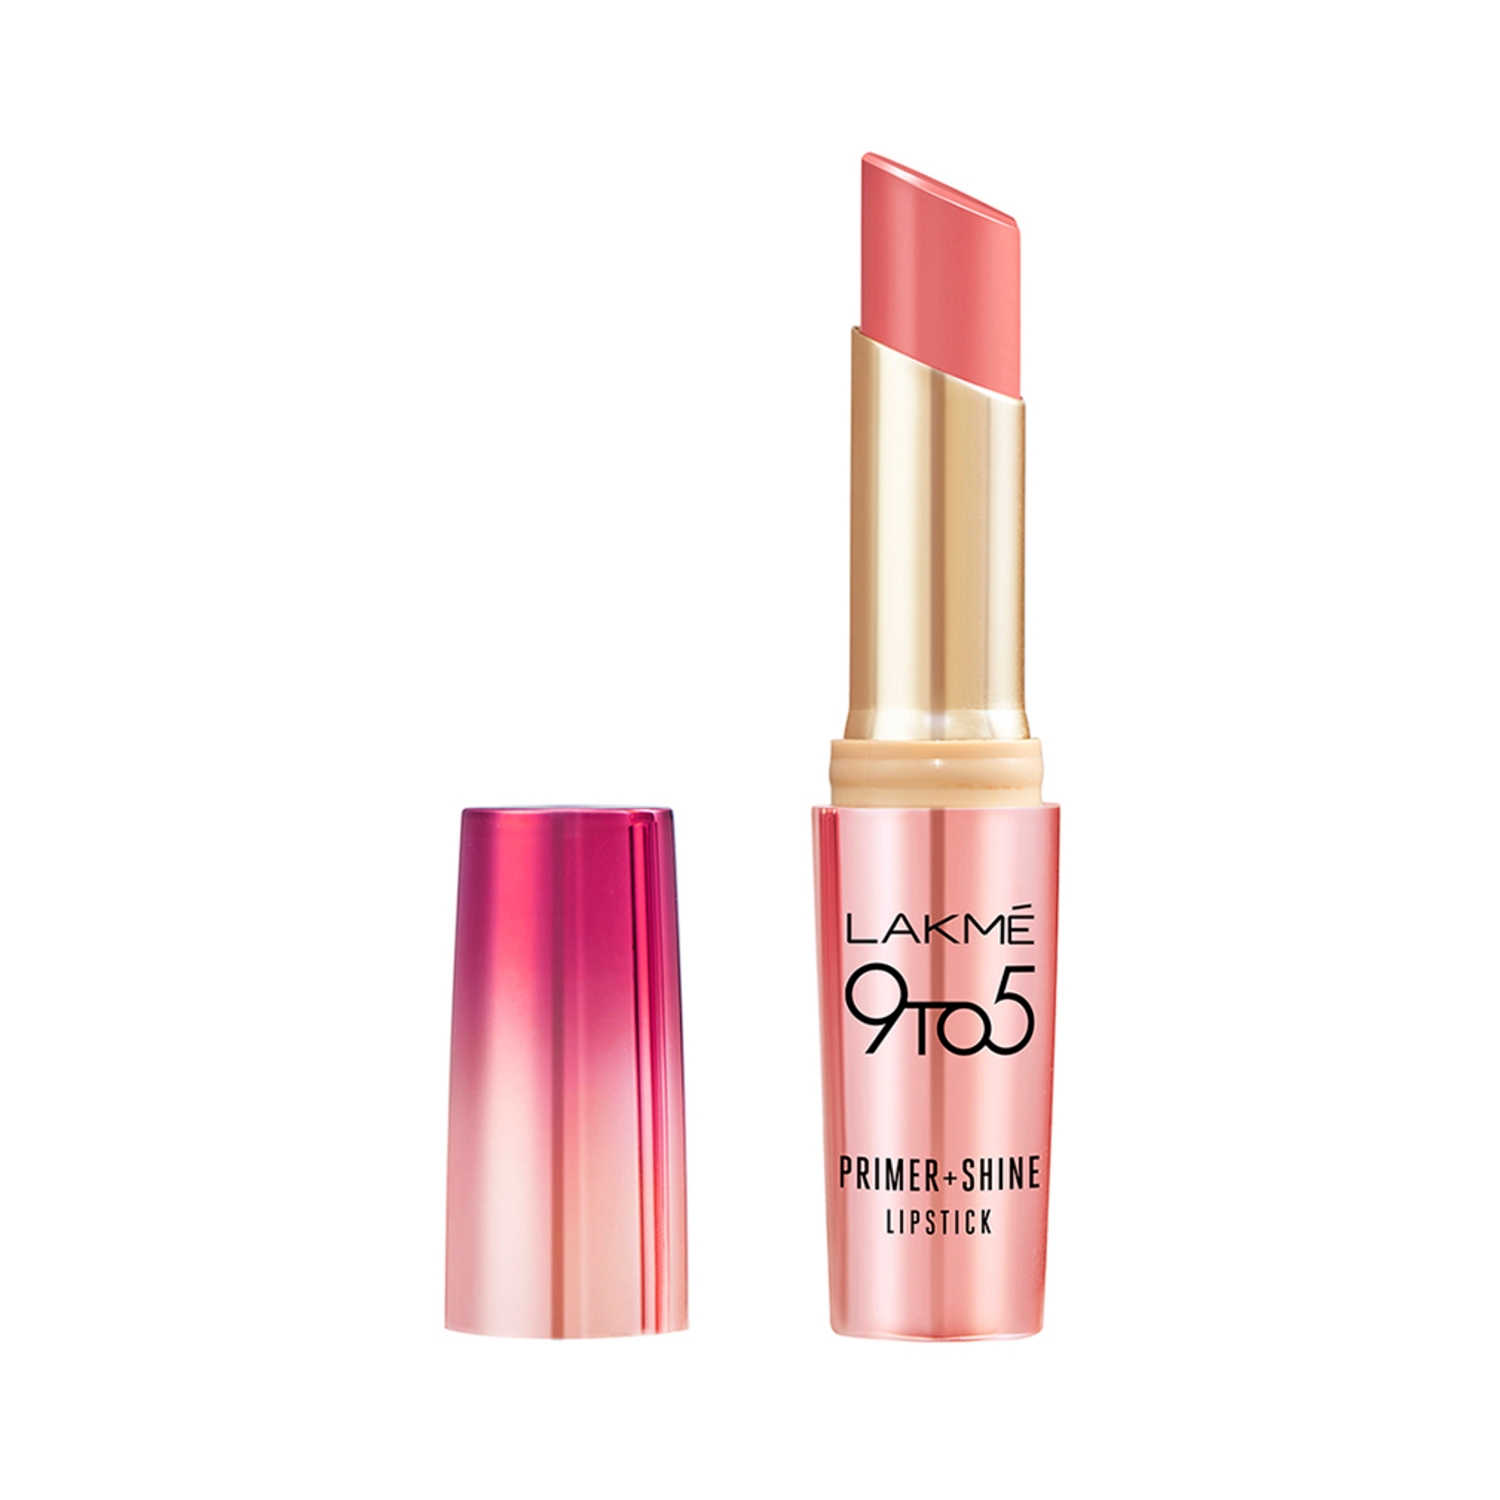 Lakme | Lakme 9 To 5 Primer + Shine Lipstick - Pink Flamingo (3.6g)